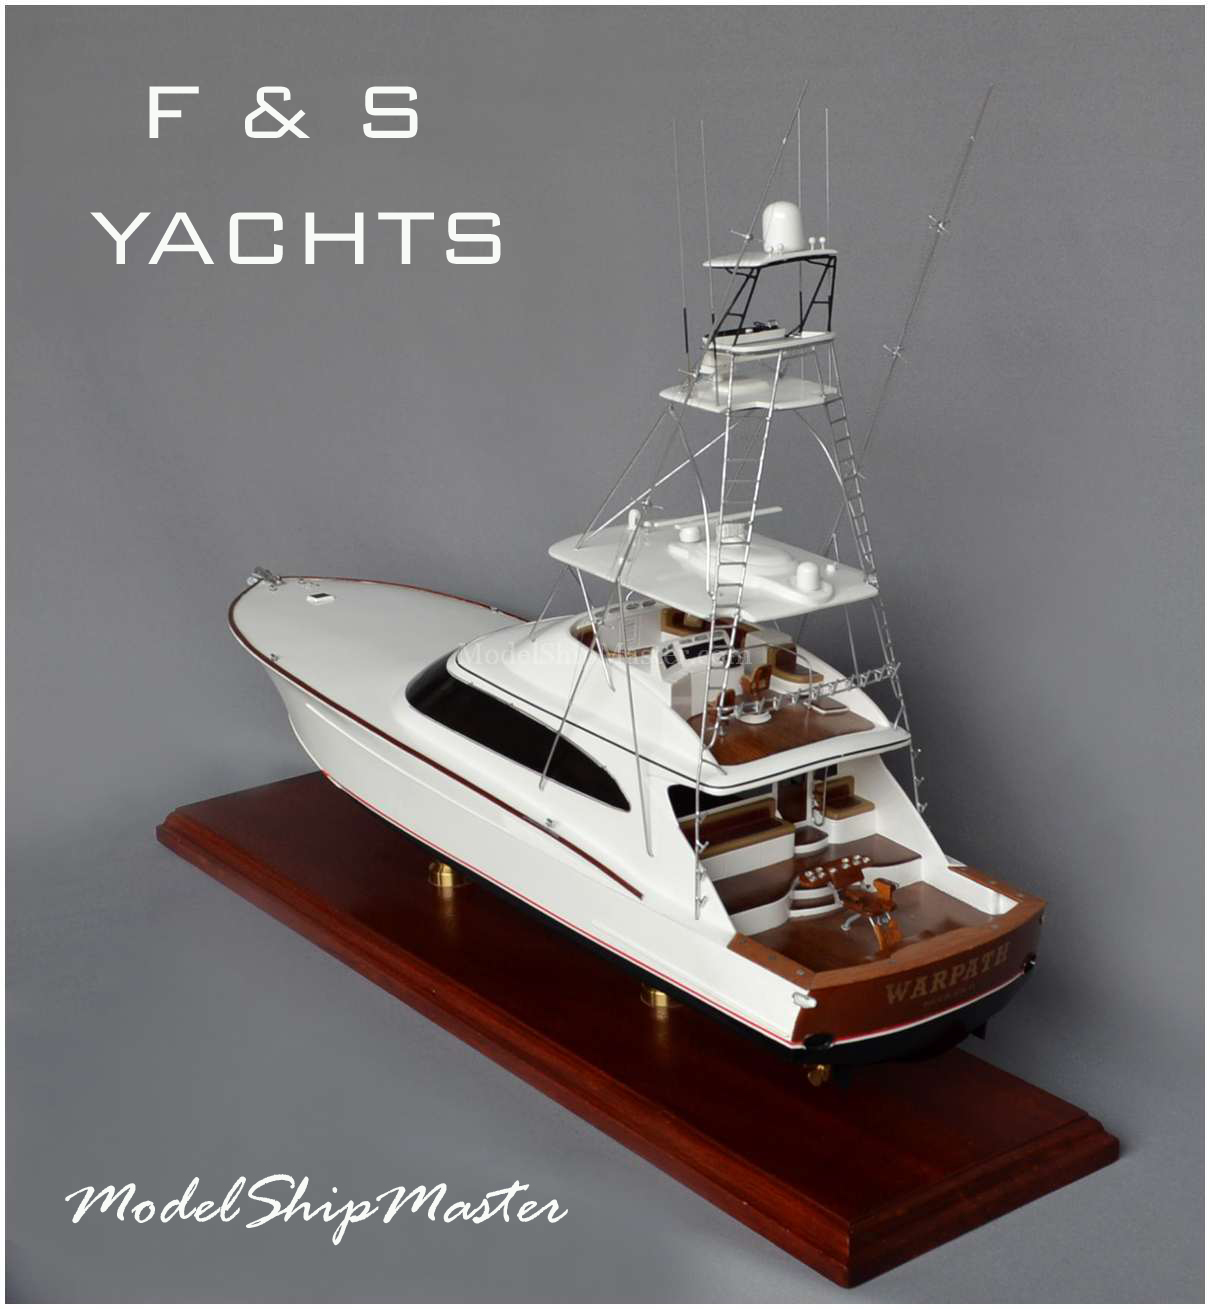 F&S boat model, Boatworks Sportfisher